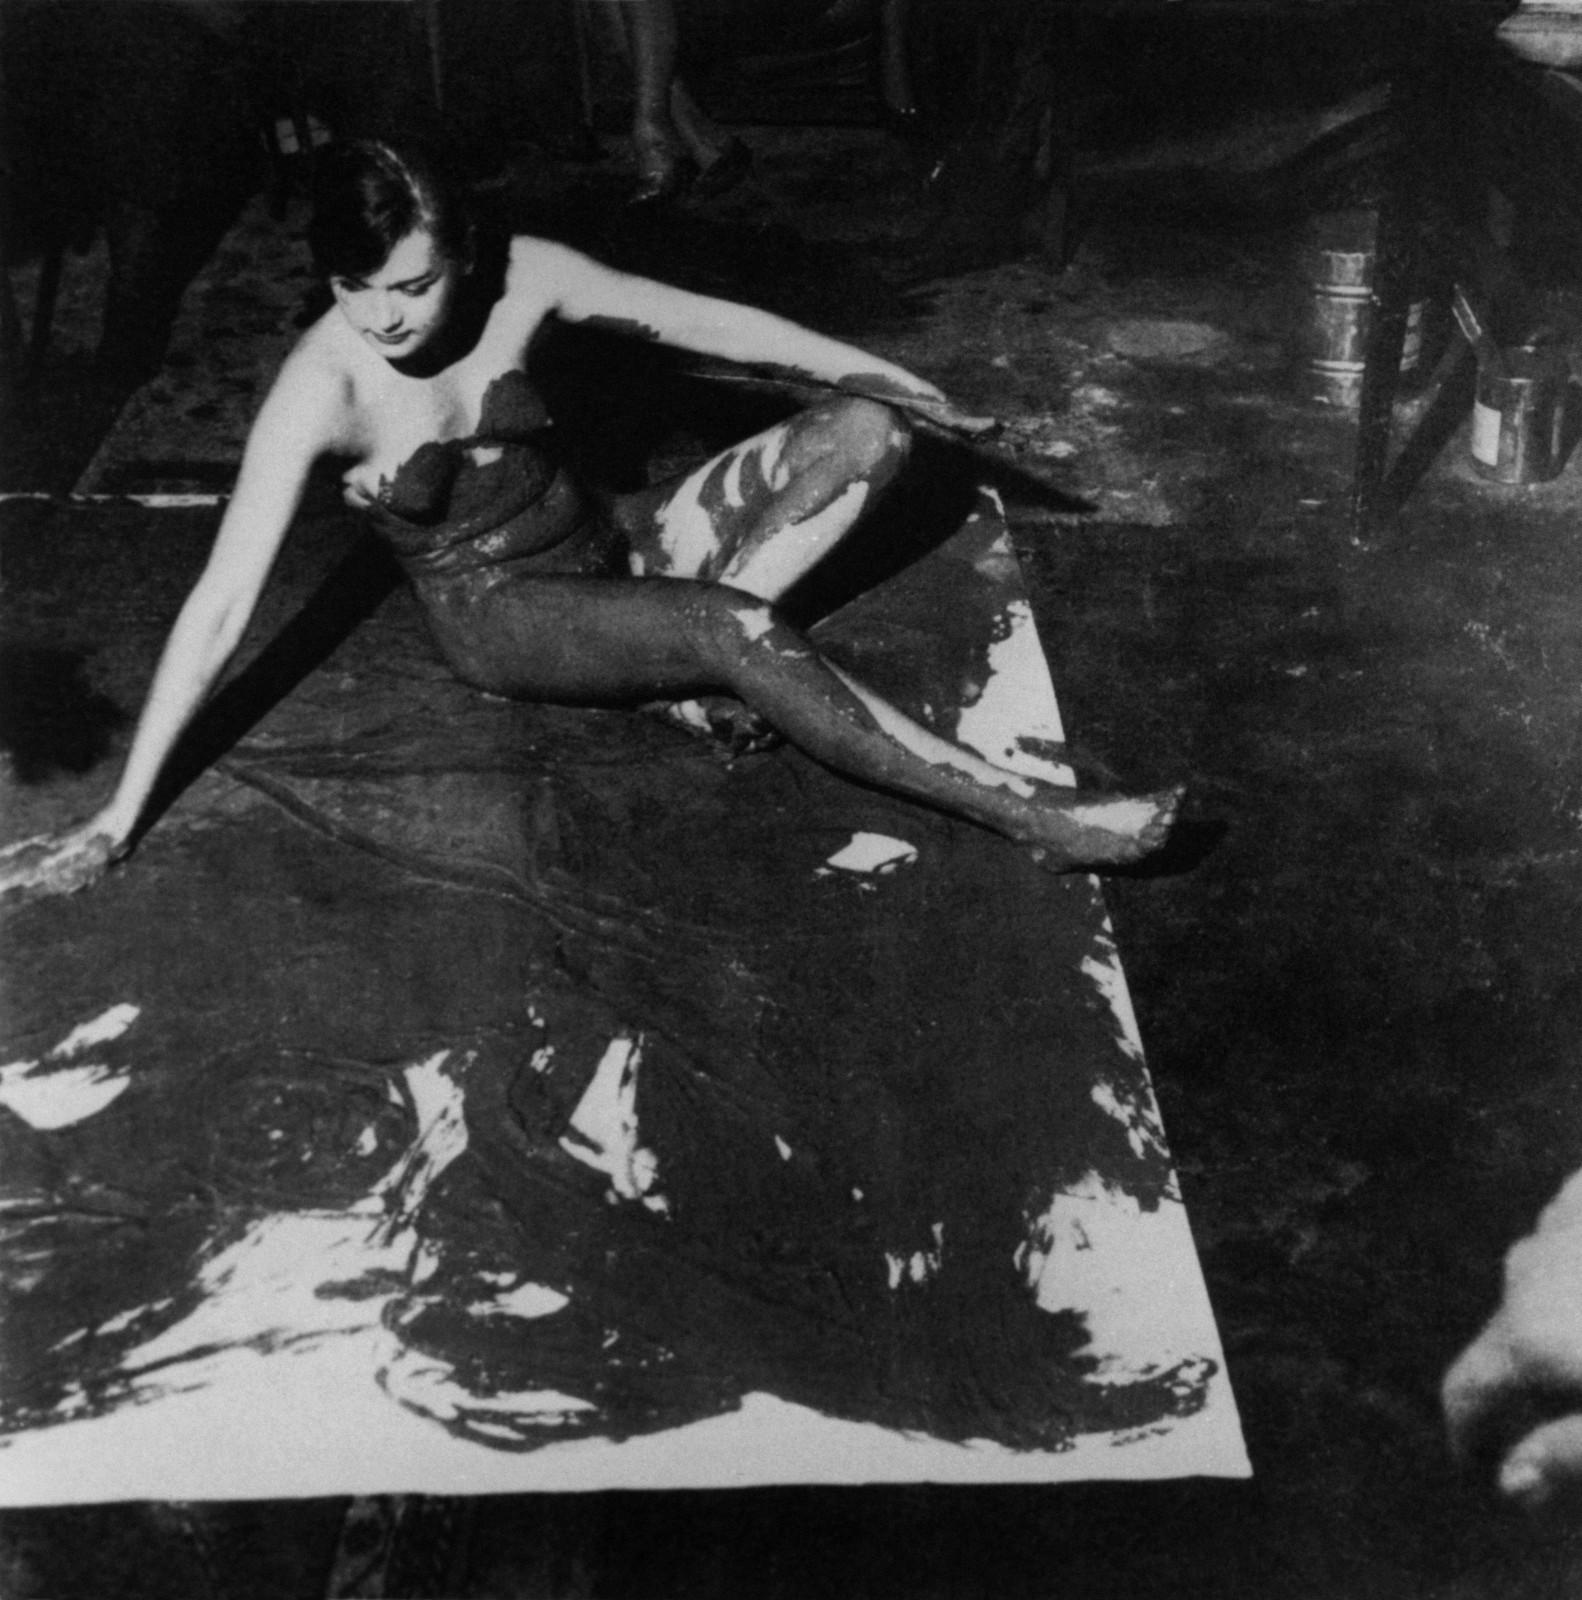 Première expérience des "pinceaux vivants", appartement de Robert Godet, île saint-Louis, Paris, 1958